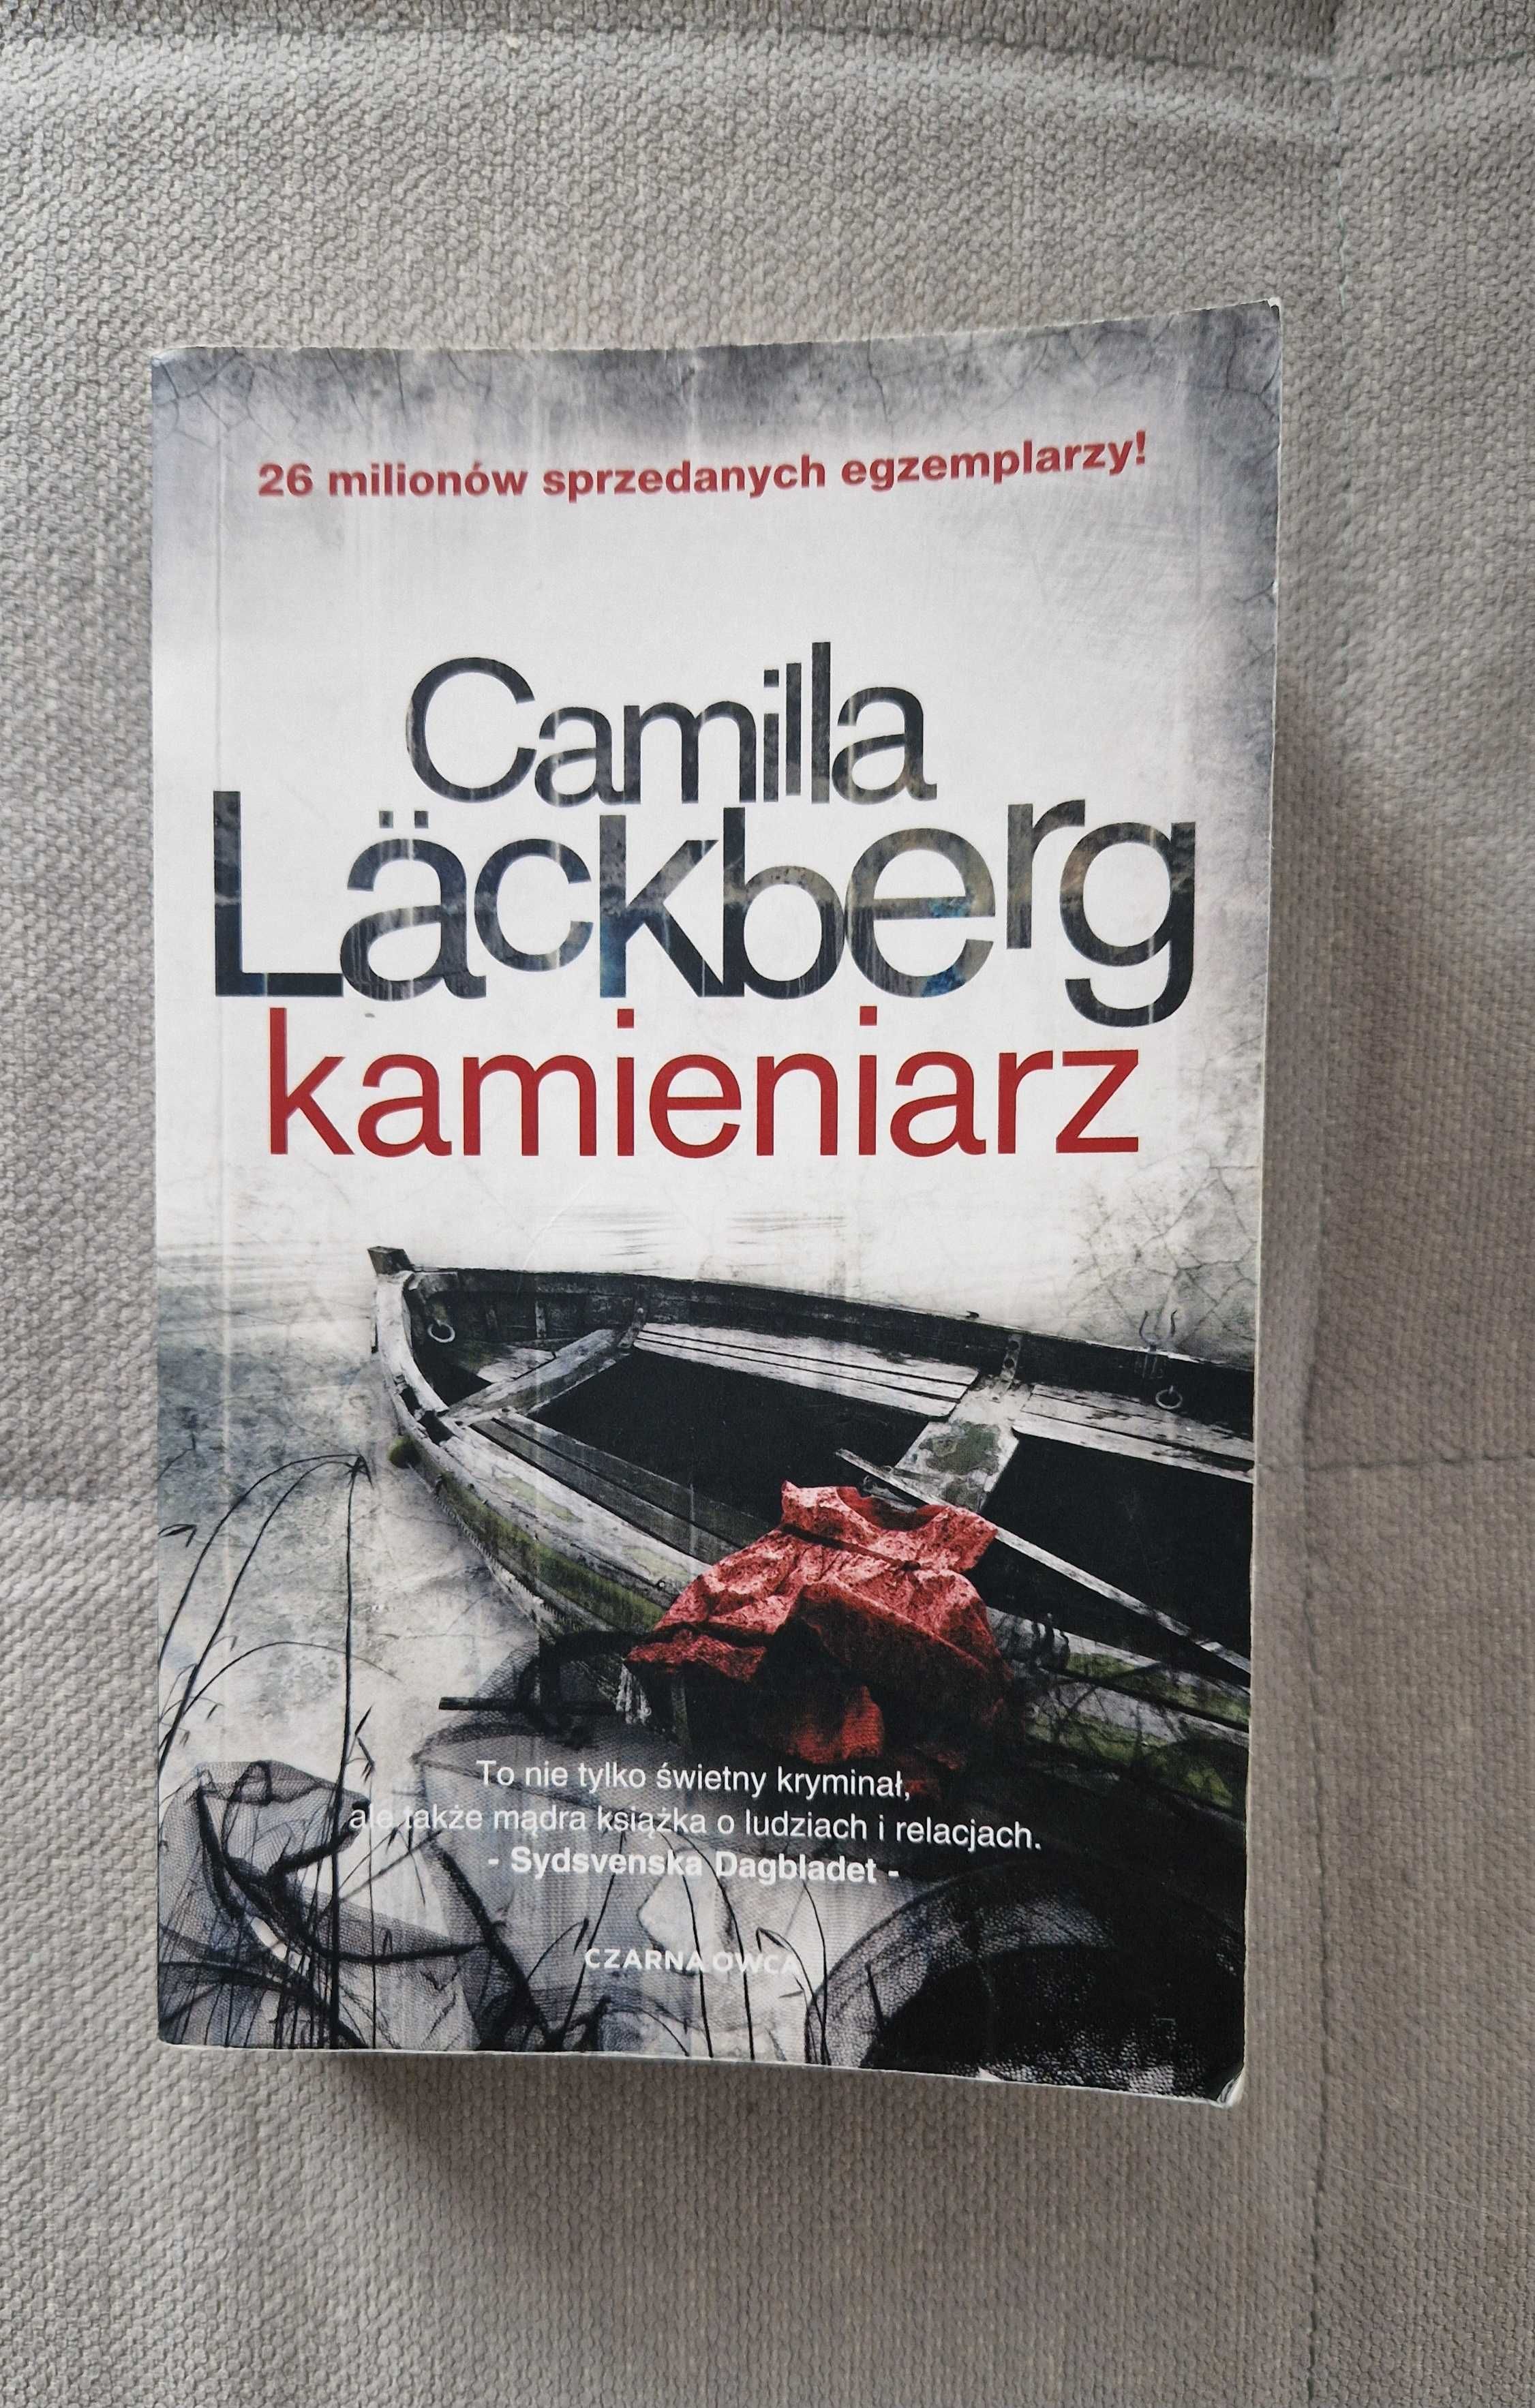 Kamieniarz, Camila Lackberg